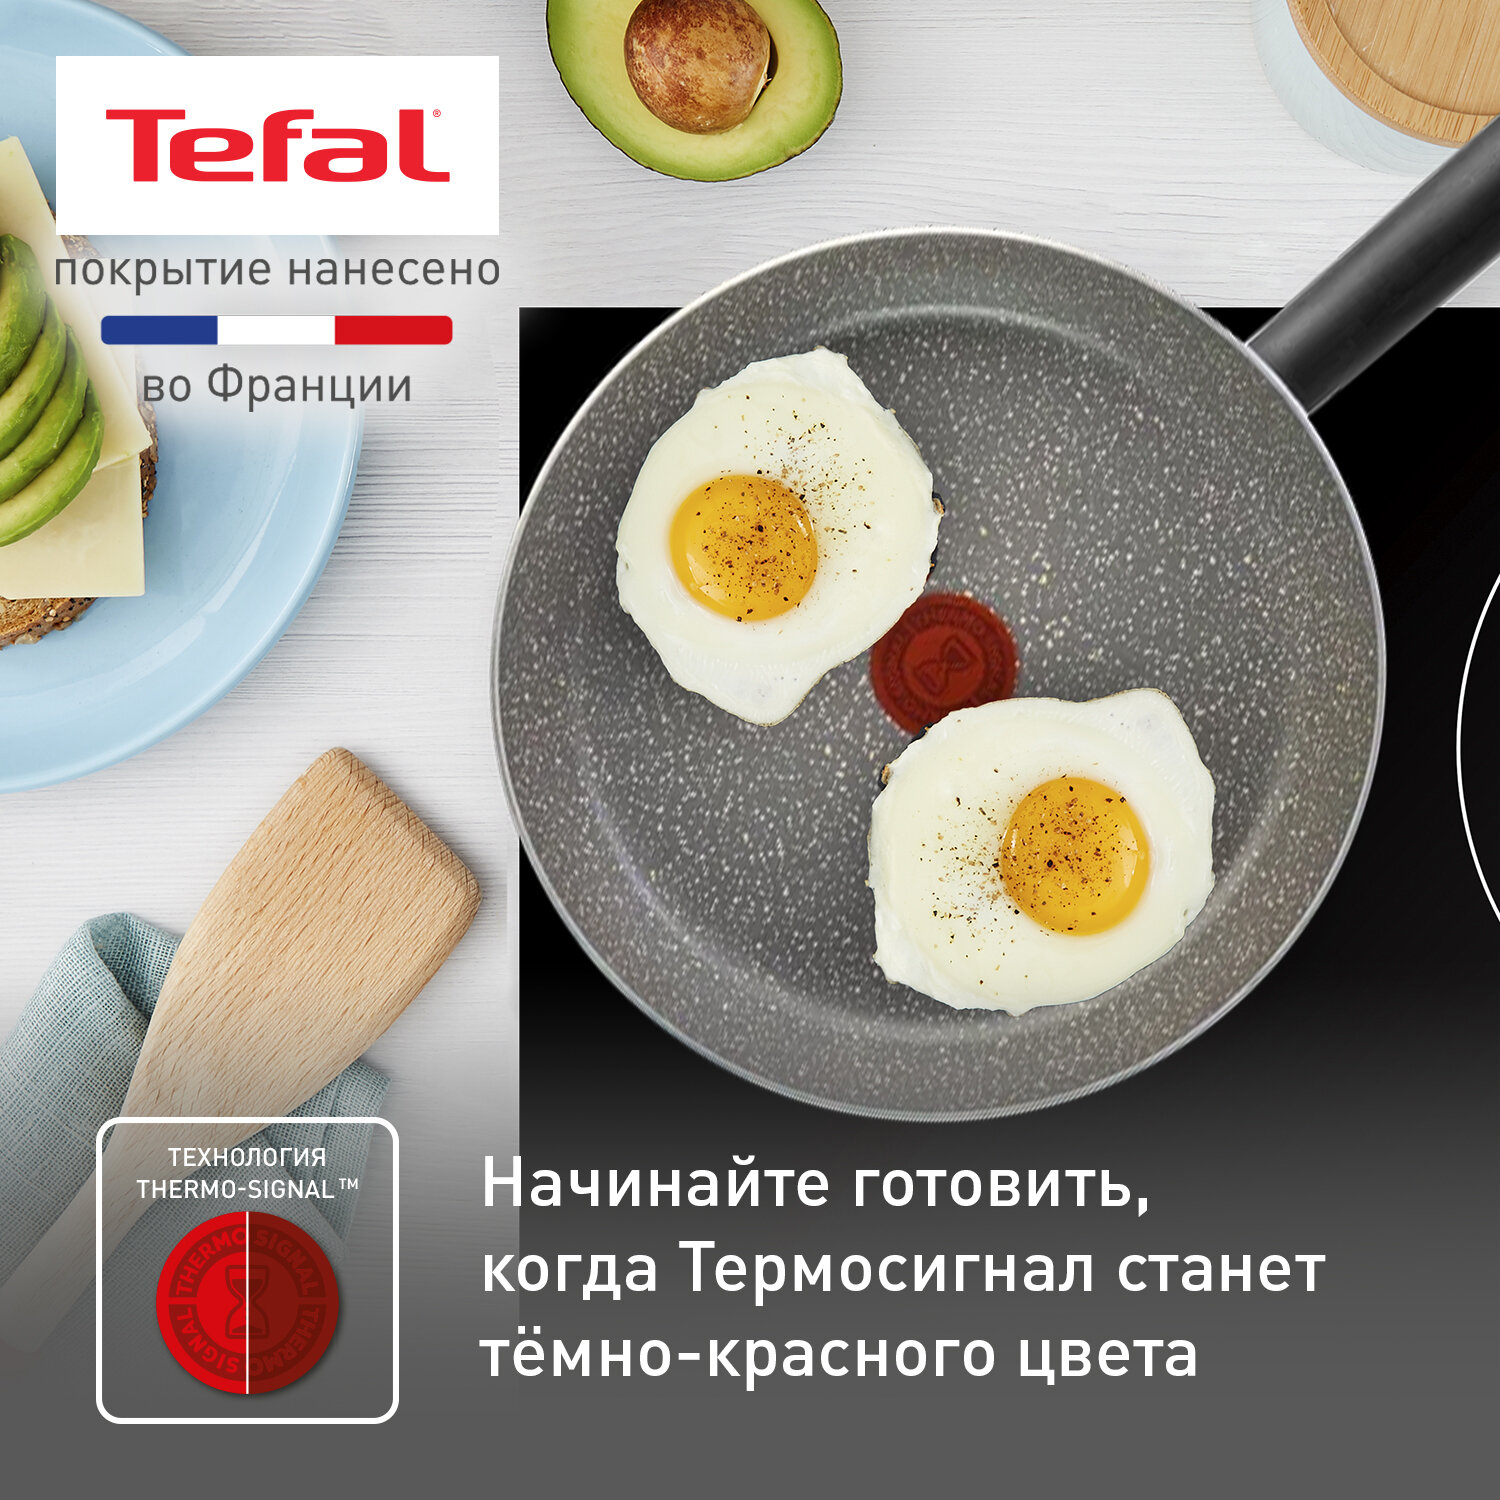 Сковорода Tefal Natural Cook 04213126, диаметр 26 см, с индикатором температуры и антипригарным покрытием, для газовых, электрических плит